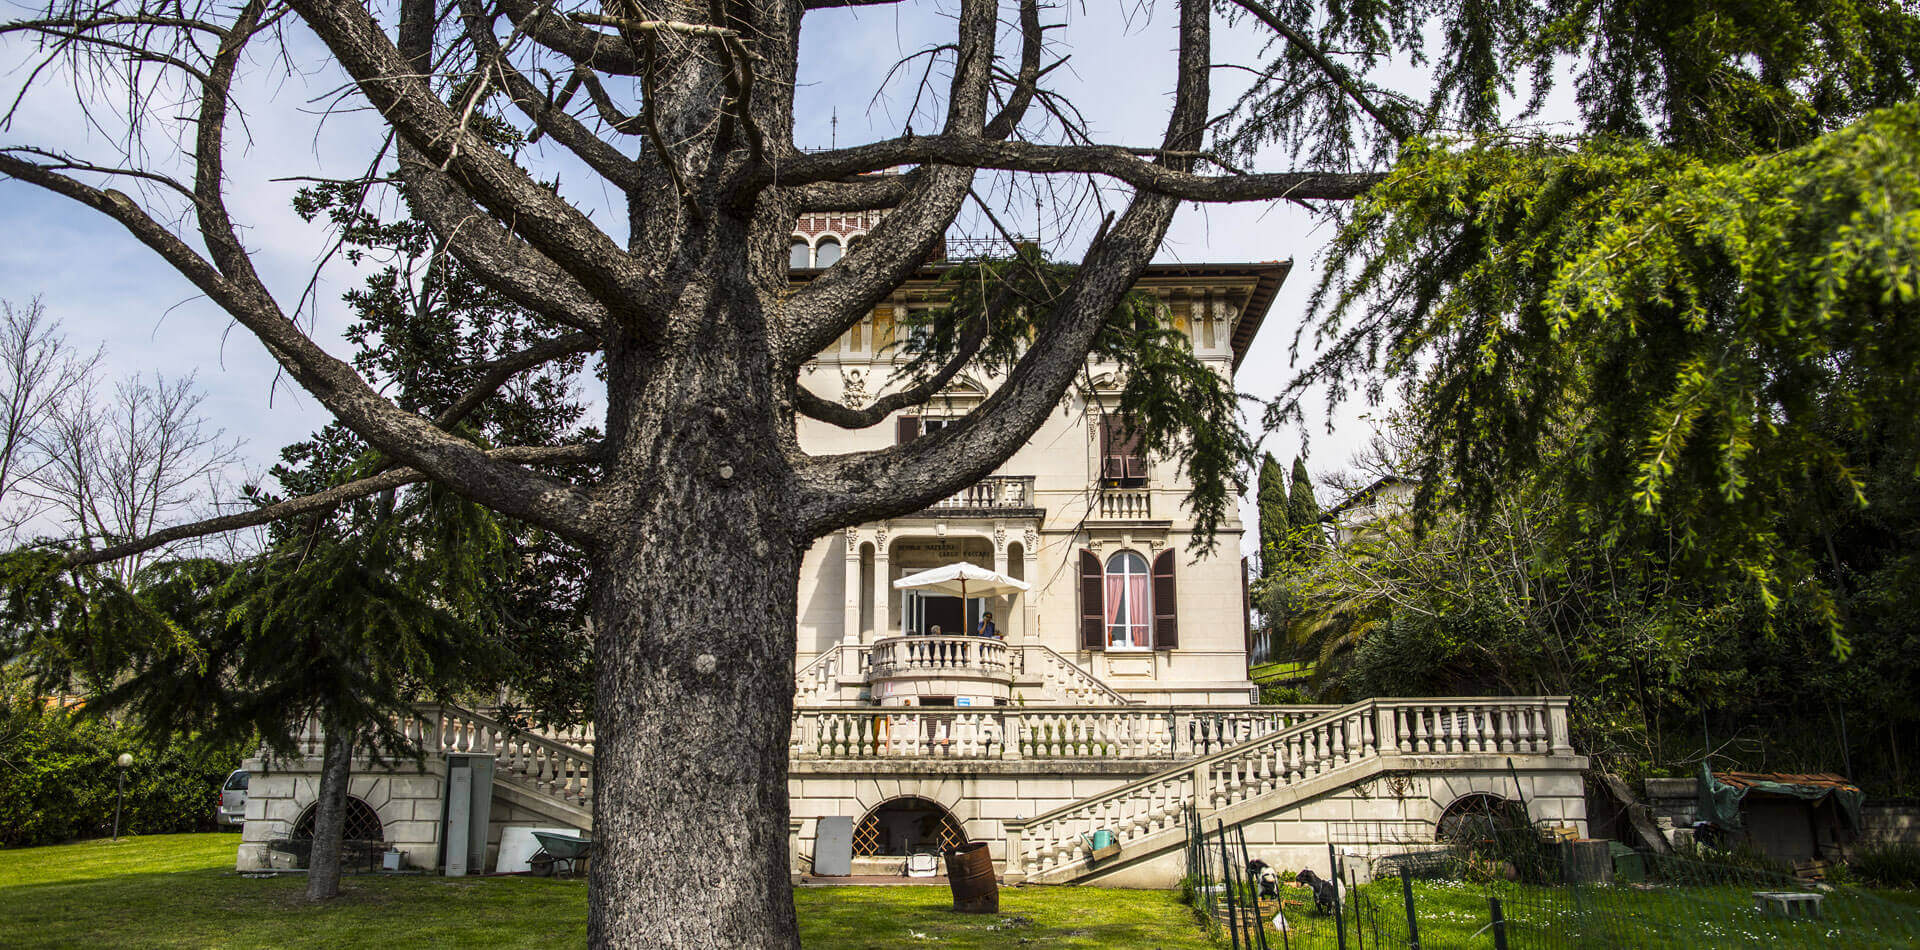 Villa Belvedere Casa di Riposo